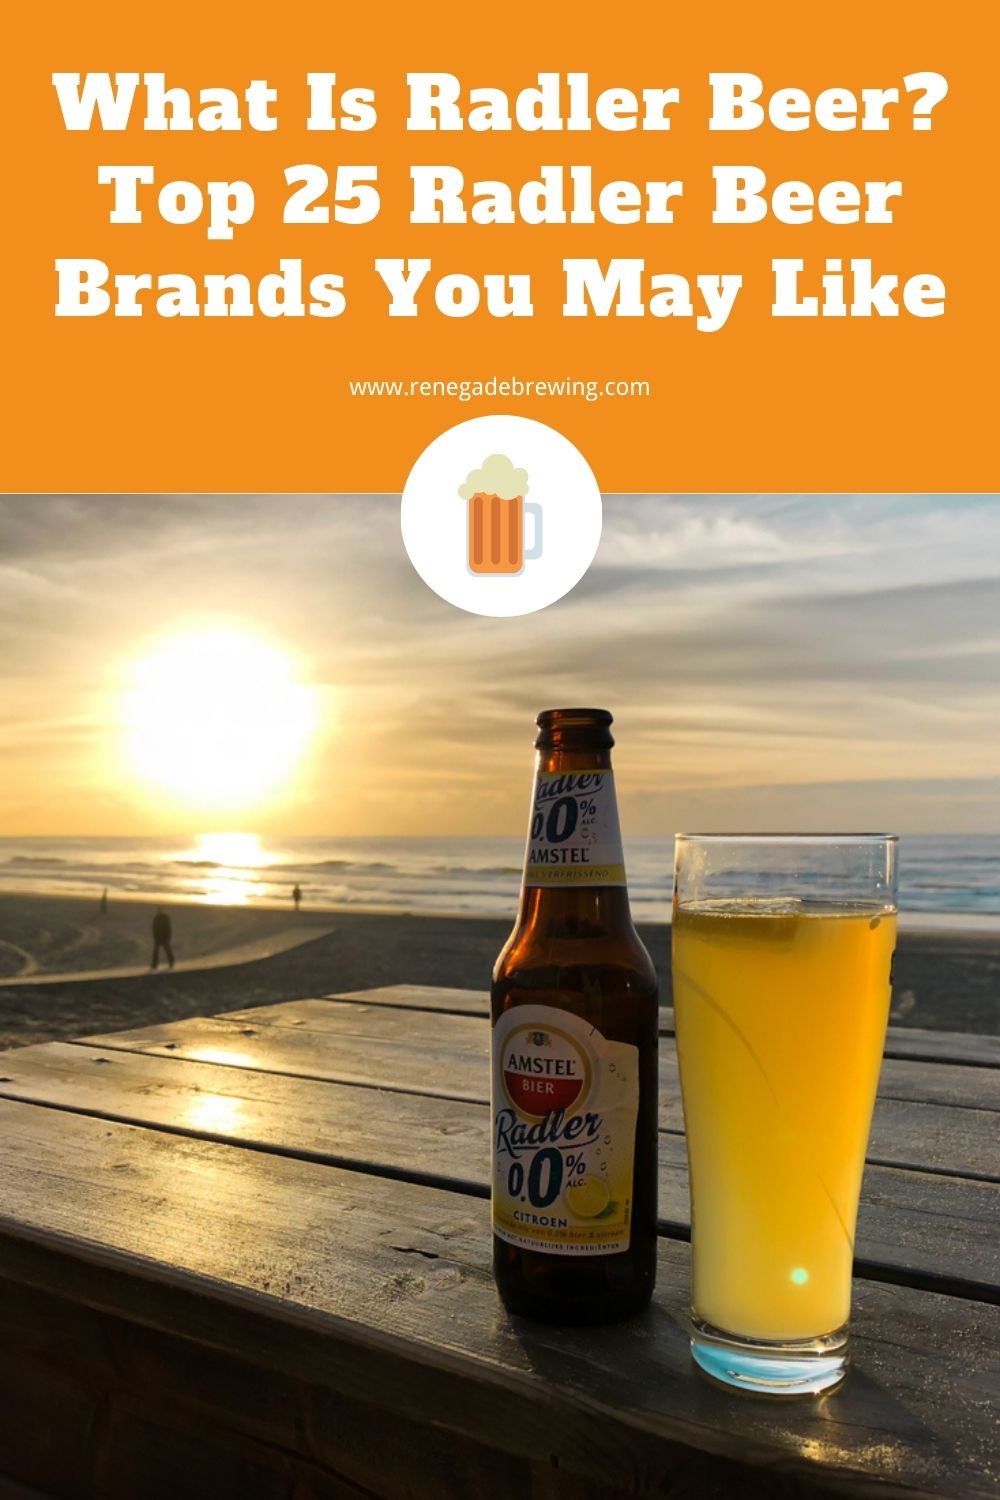 What Is Radler Beer Top 25 Radler Beer Brands You May Like 2